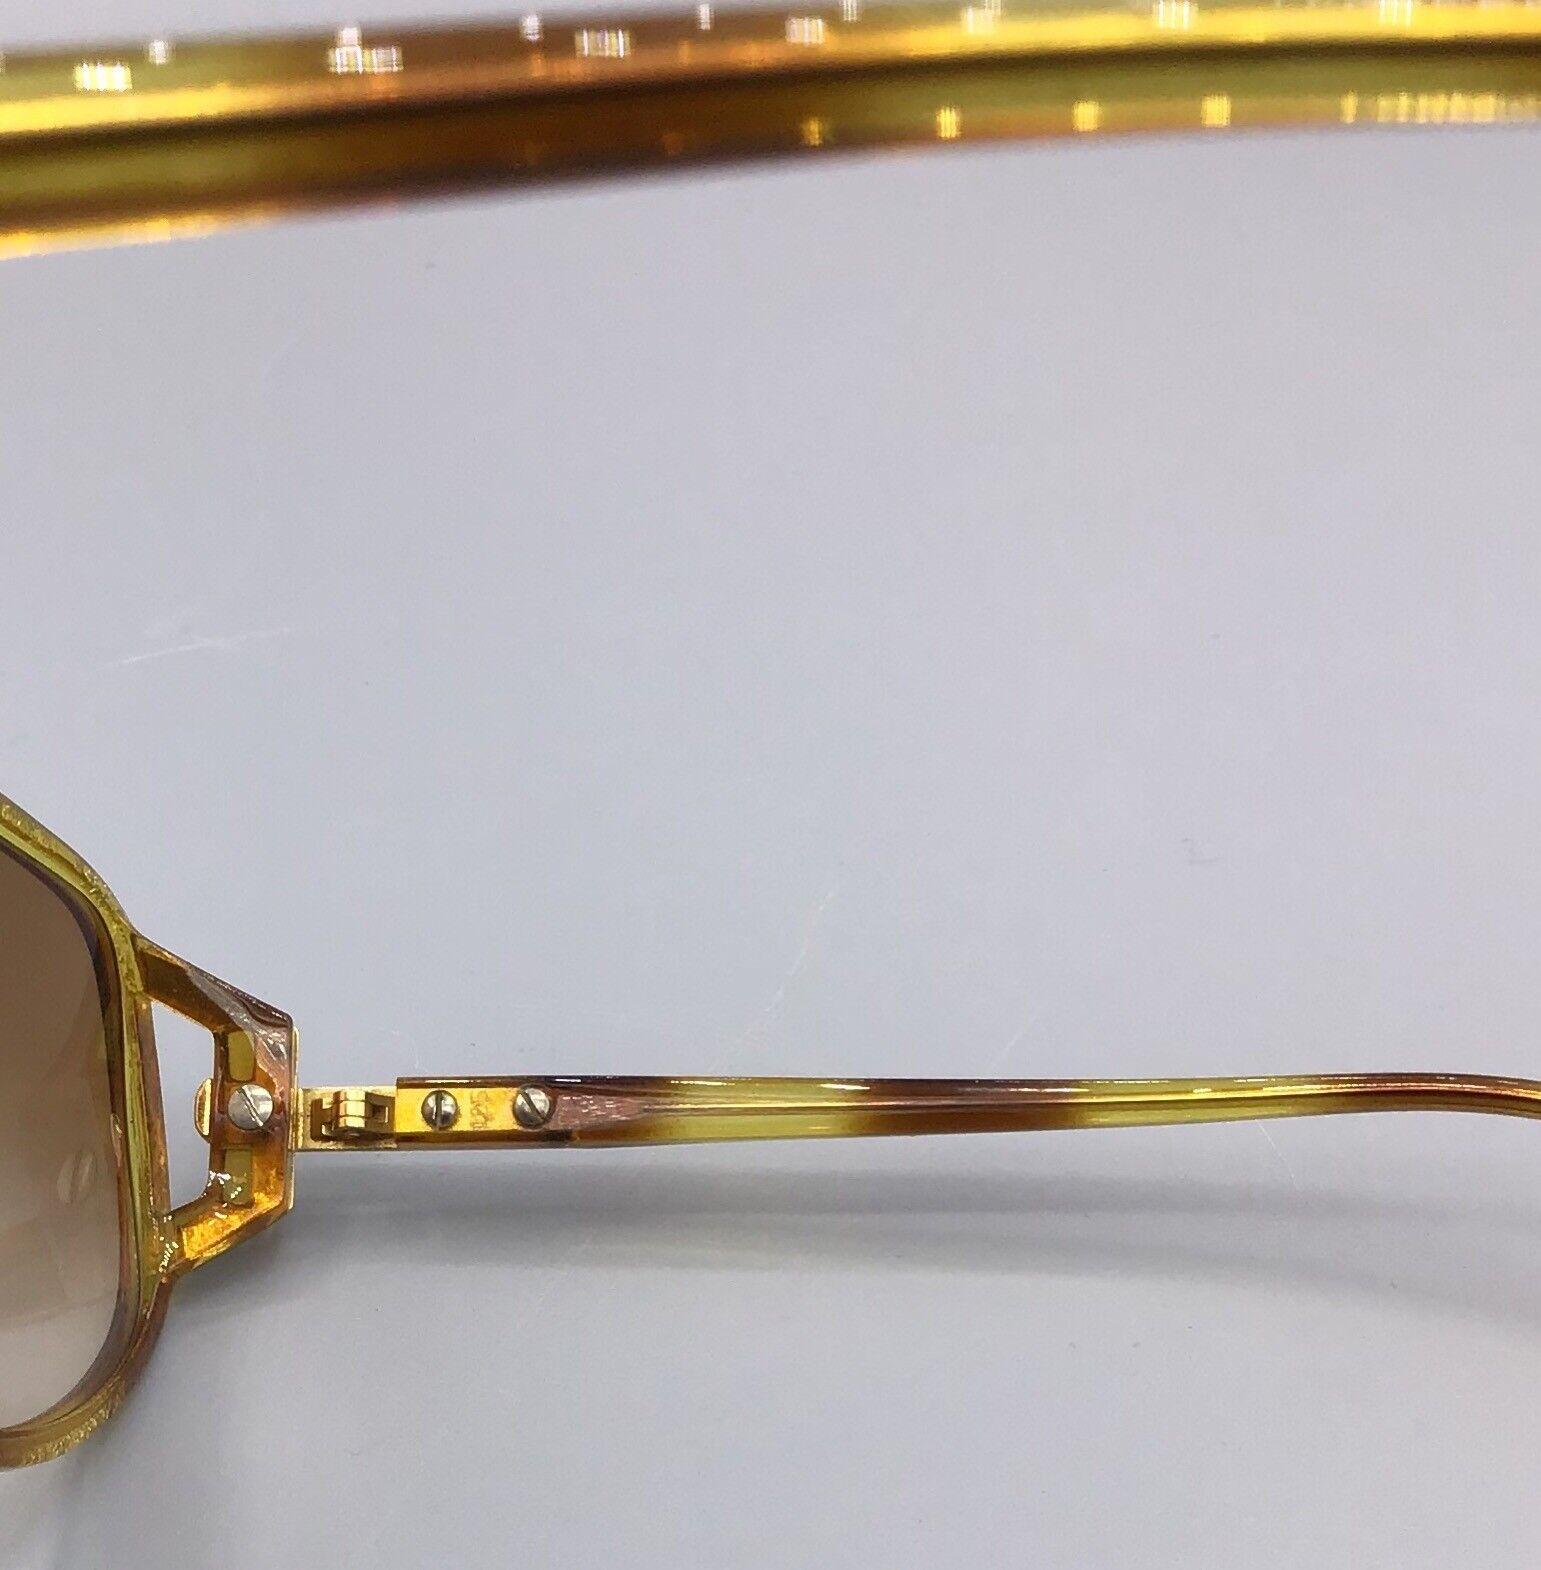 Christian Dior Occhiale da Sole Vintage Sunglasses MODELLO 2498